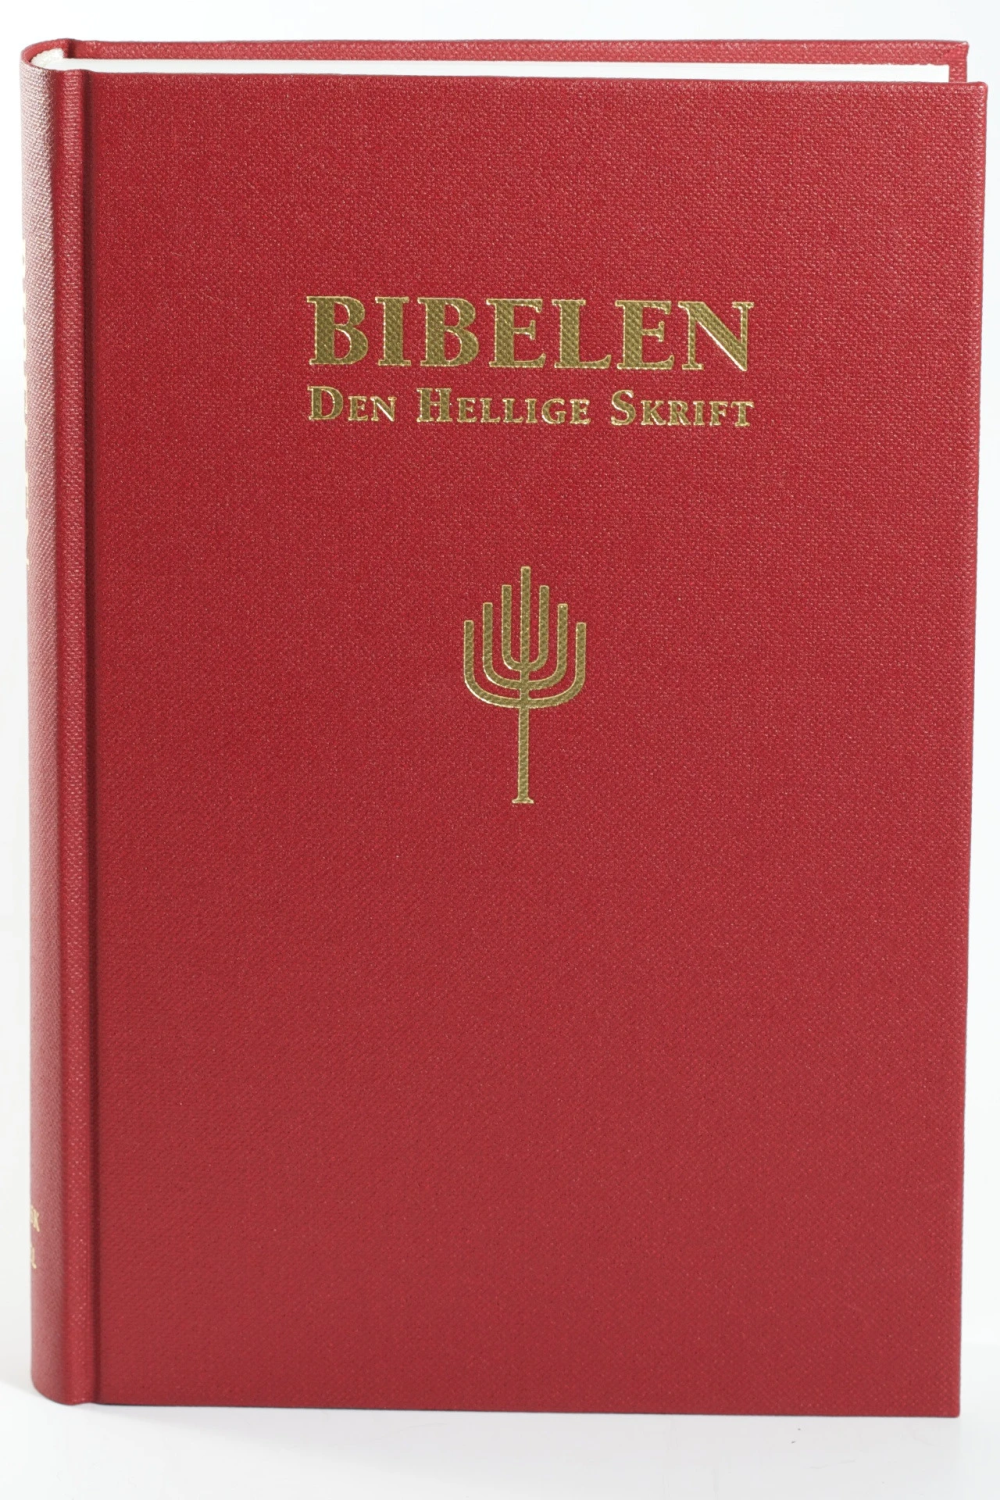 Bibelen - Den Hellige Skrift (88/07). Storskrift. Rød sjirting. (BM)